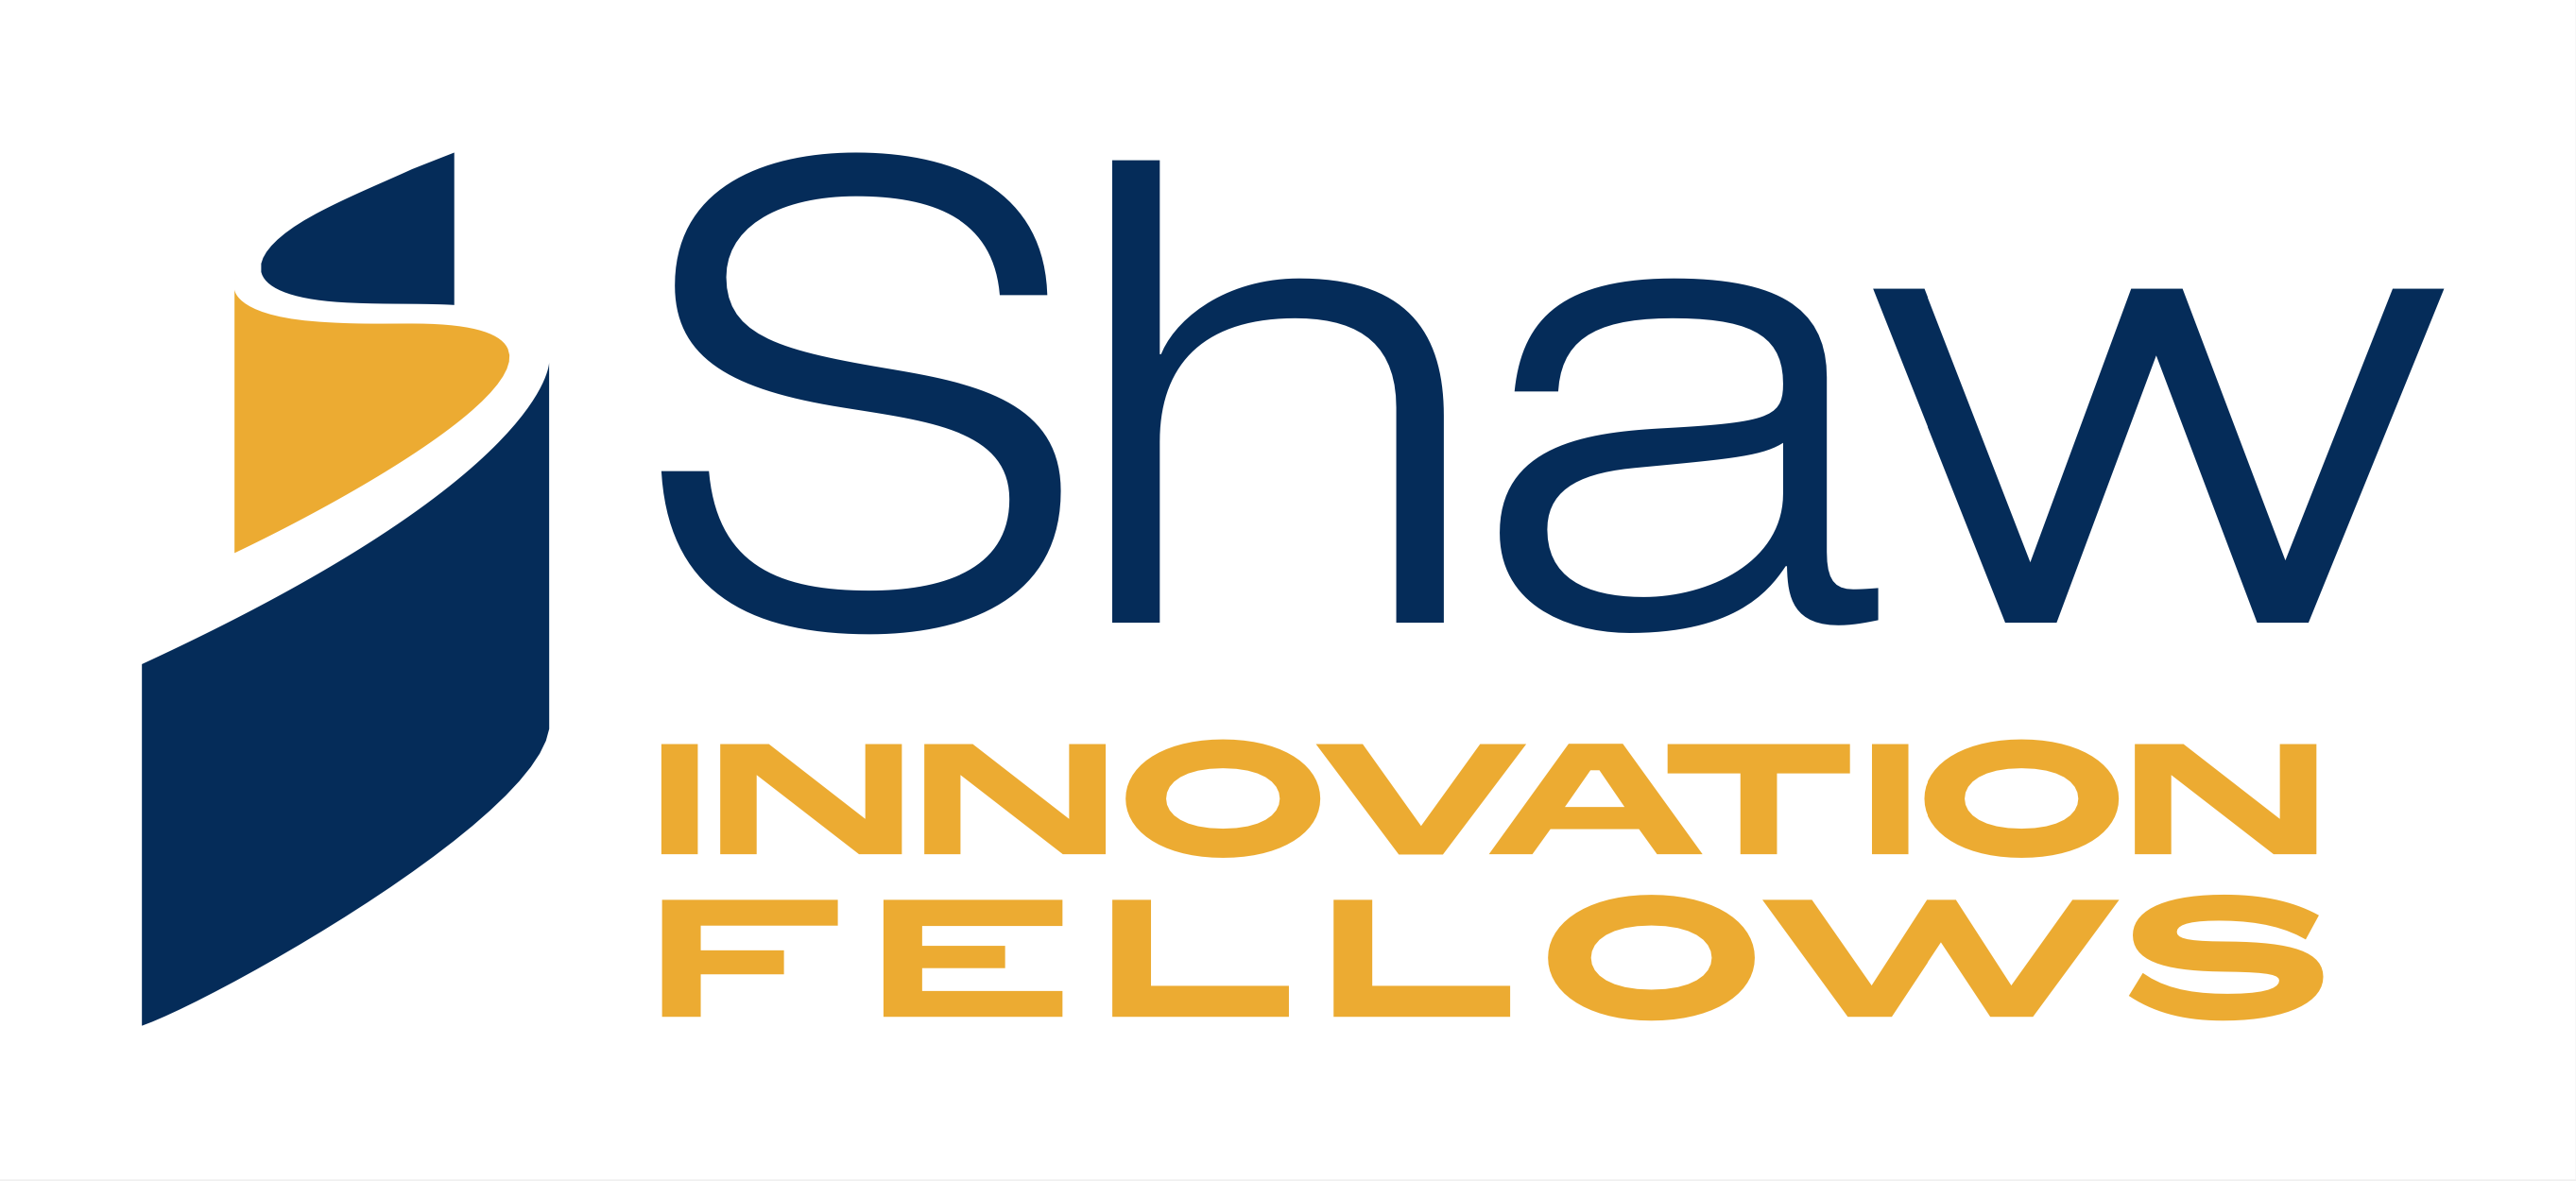 Shaw Innovation Fellows logo